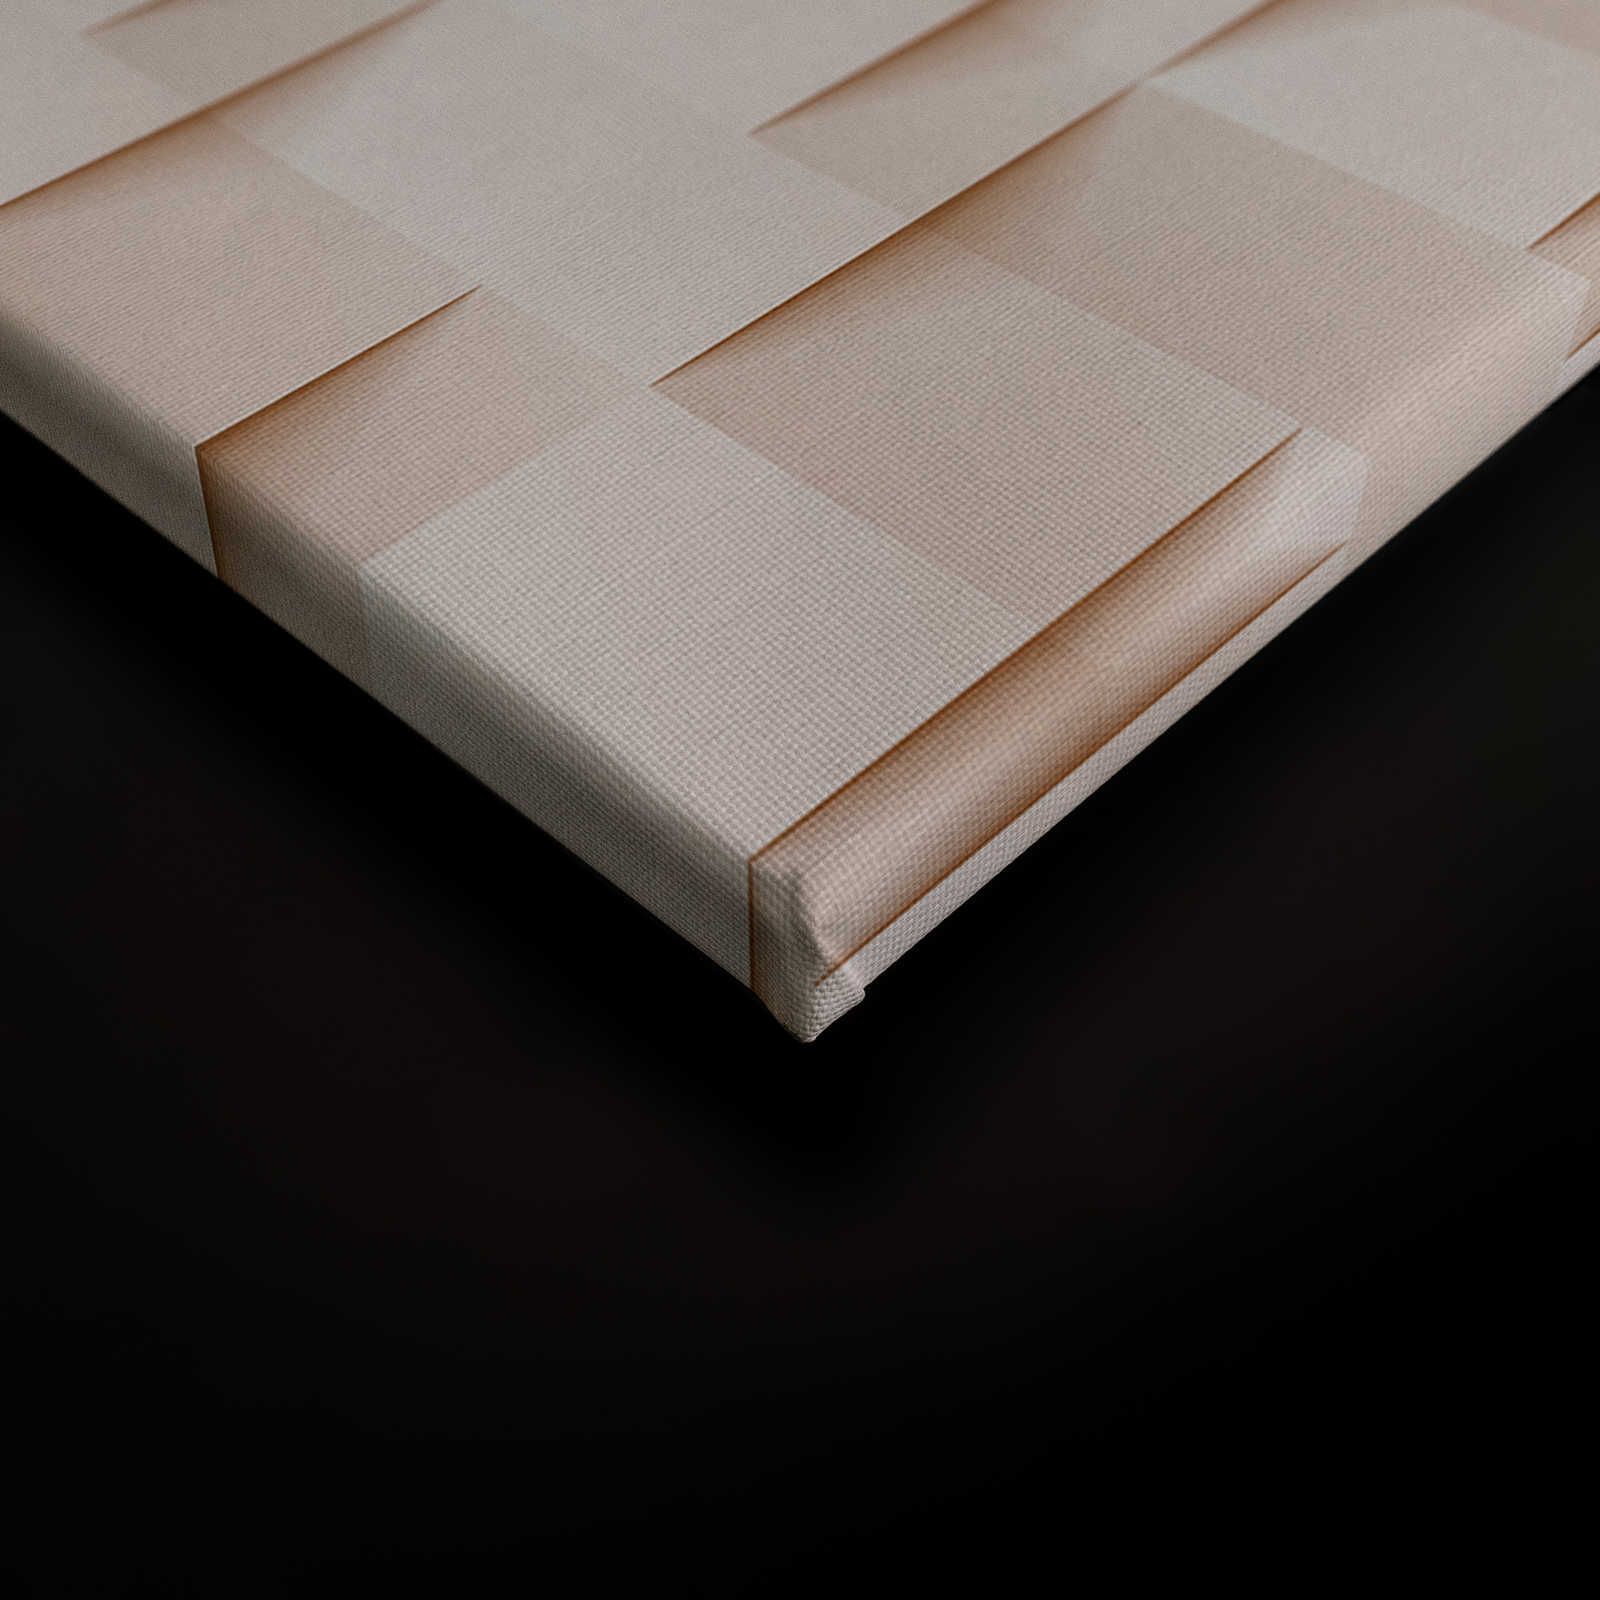             Paper House 1 - Canvas schilderij 3D structuur papier origami vouwen - 0,90 m x 0,60 m
        